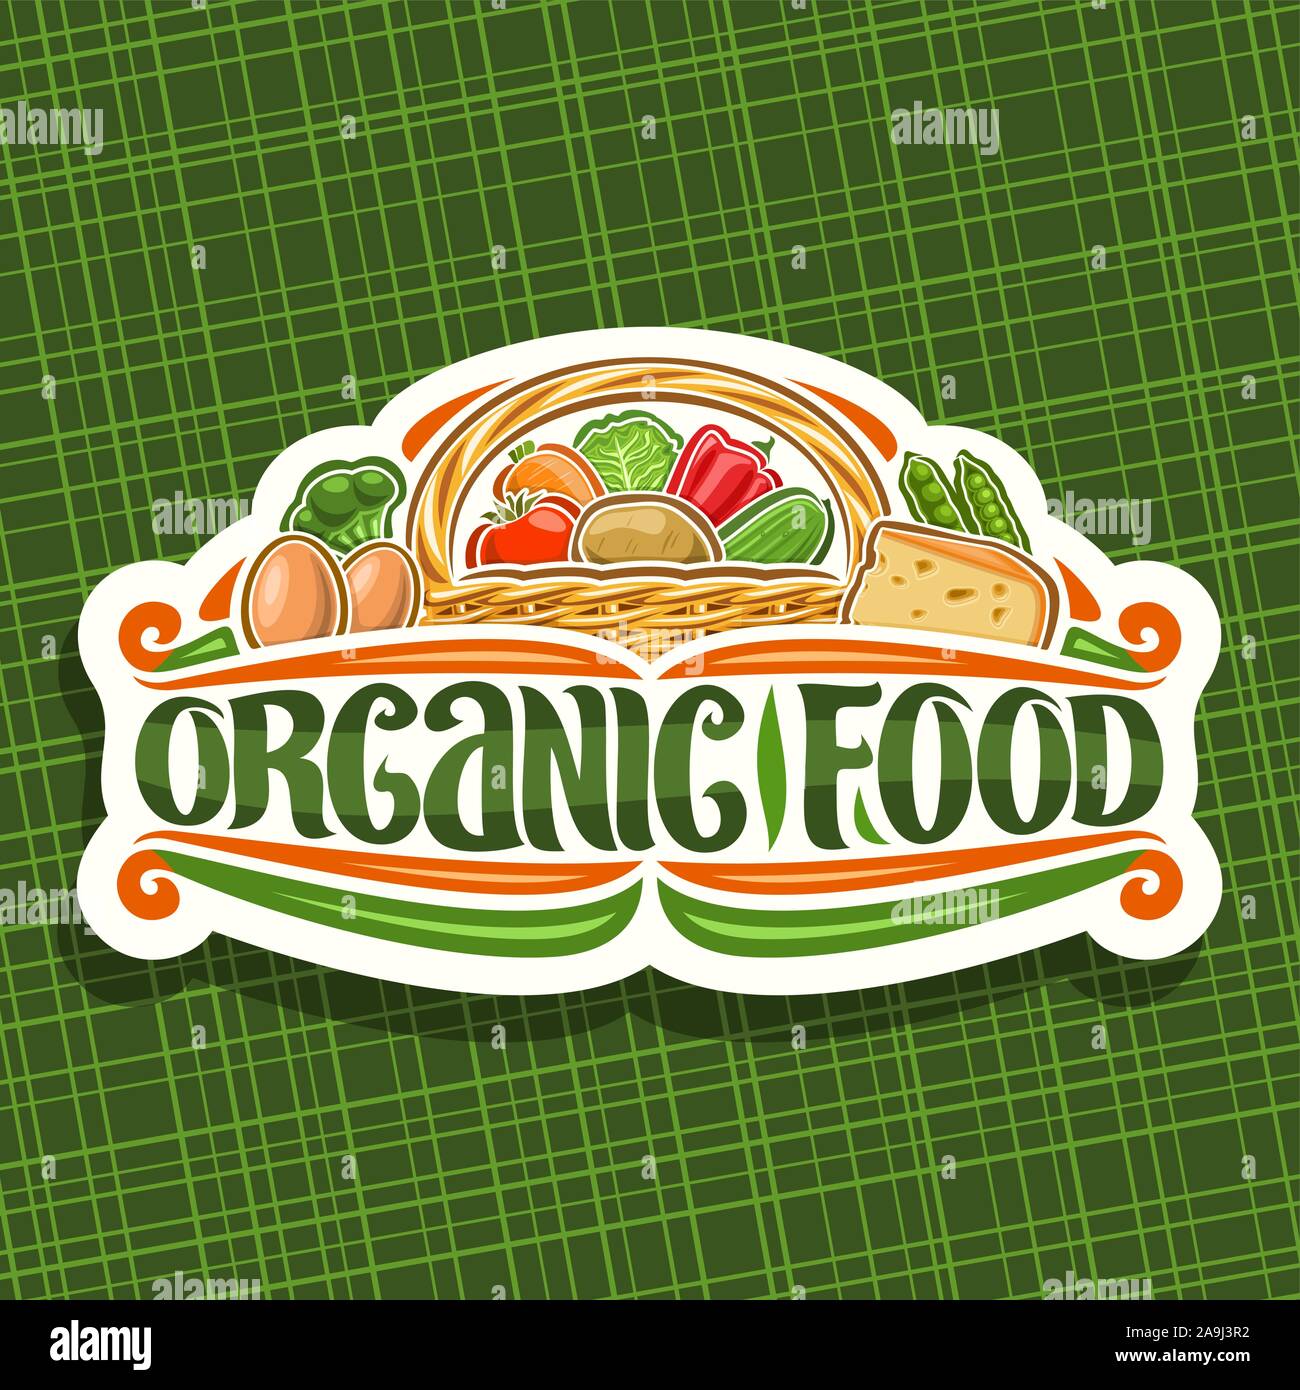 Vektor Logo für ökologische Lebensmittel, Papier schneiden Schild mit Haufen verschiedene Cartoon veggies, dekorativen Beschriftung für Worte Lebensmittel aus biologischem Anbau, der nachhaltigen Stock Vektor